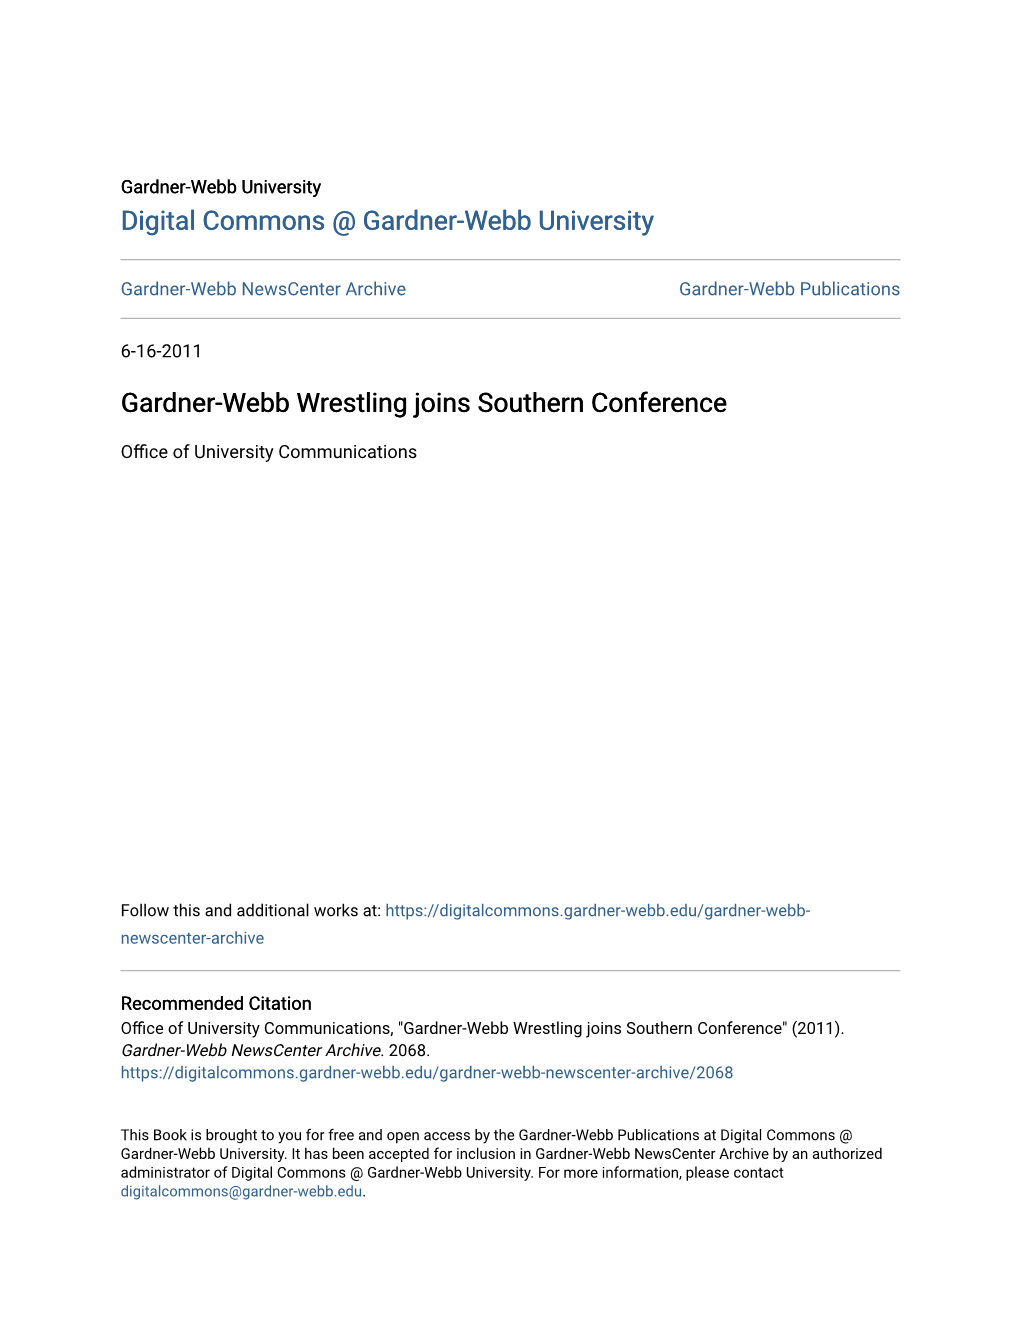 Gardner-Webb Wrestling Joins Southern Conference